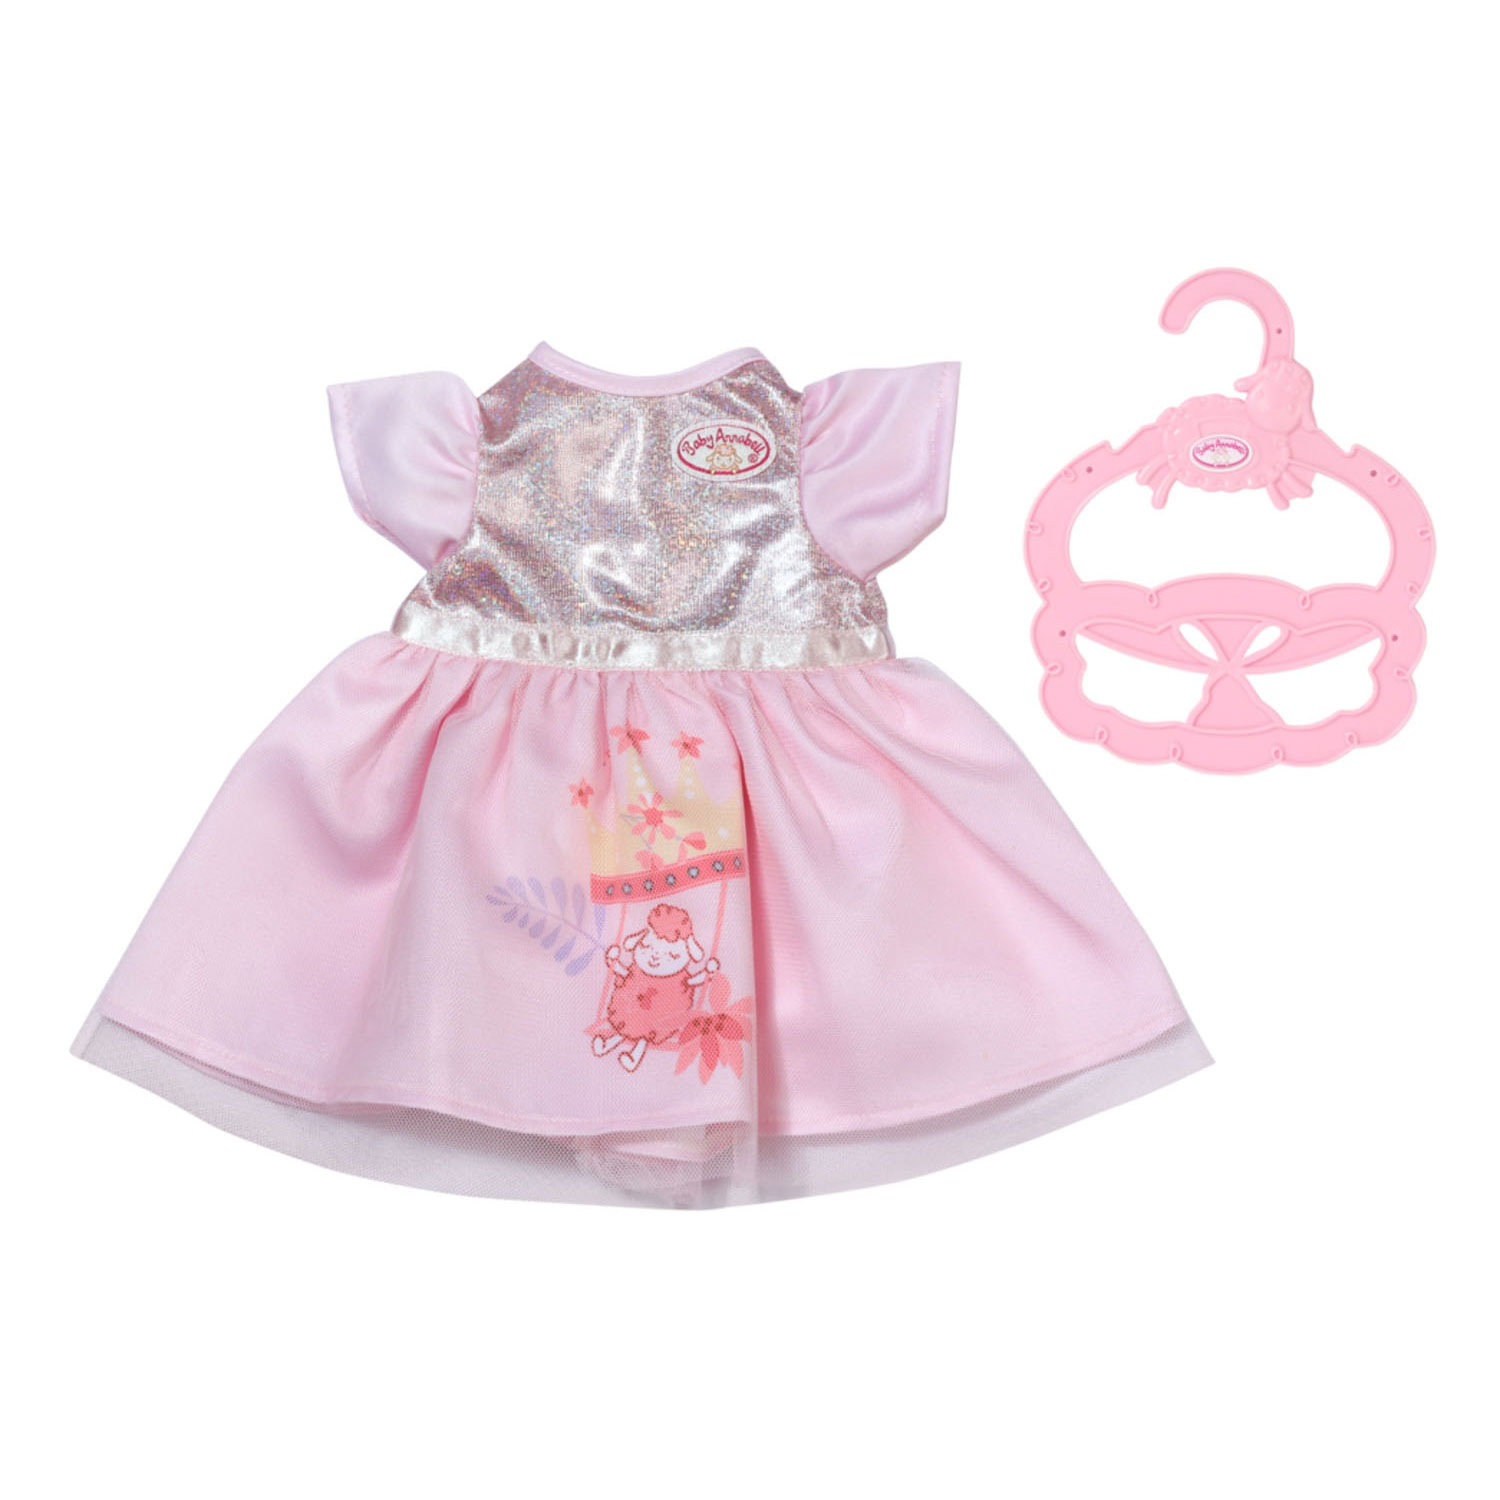 Baby Annabell Kleines süßes Kleid, 36 cm